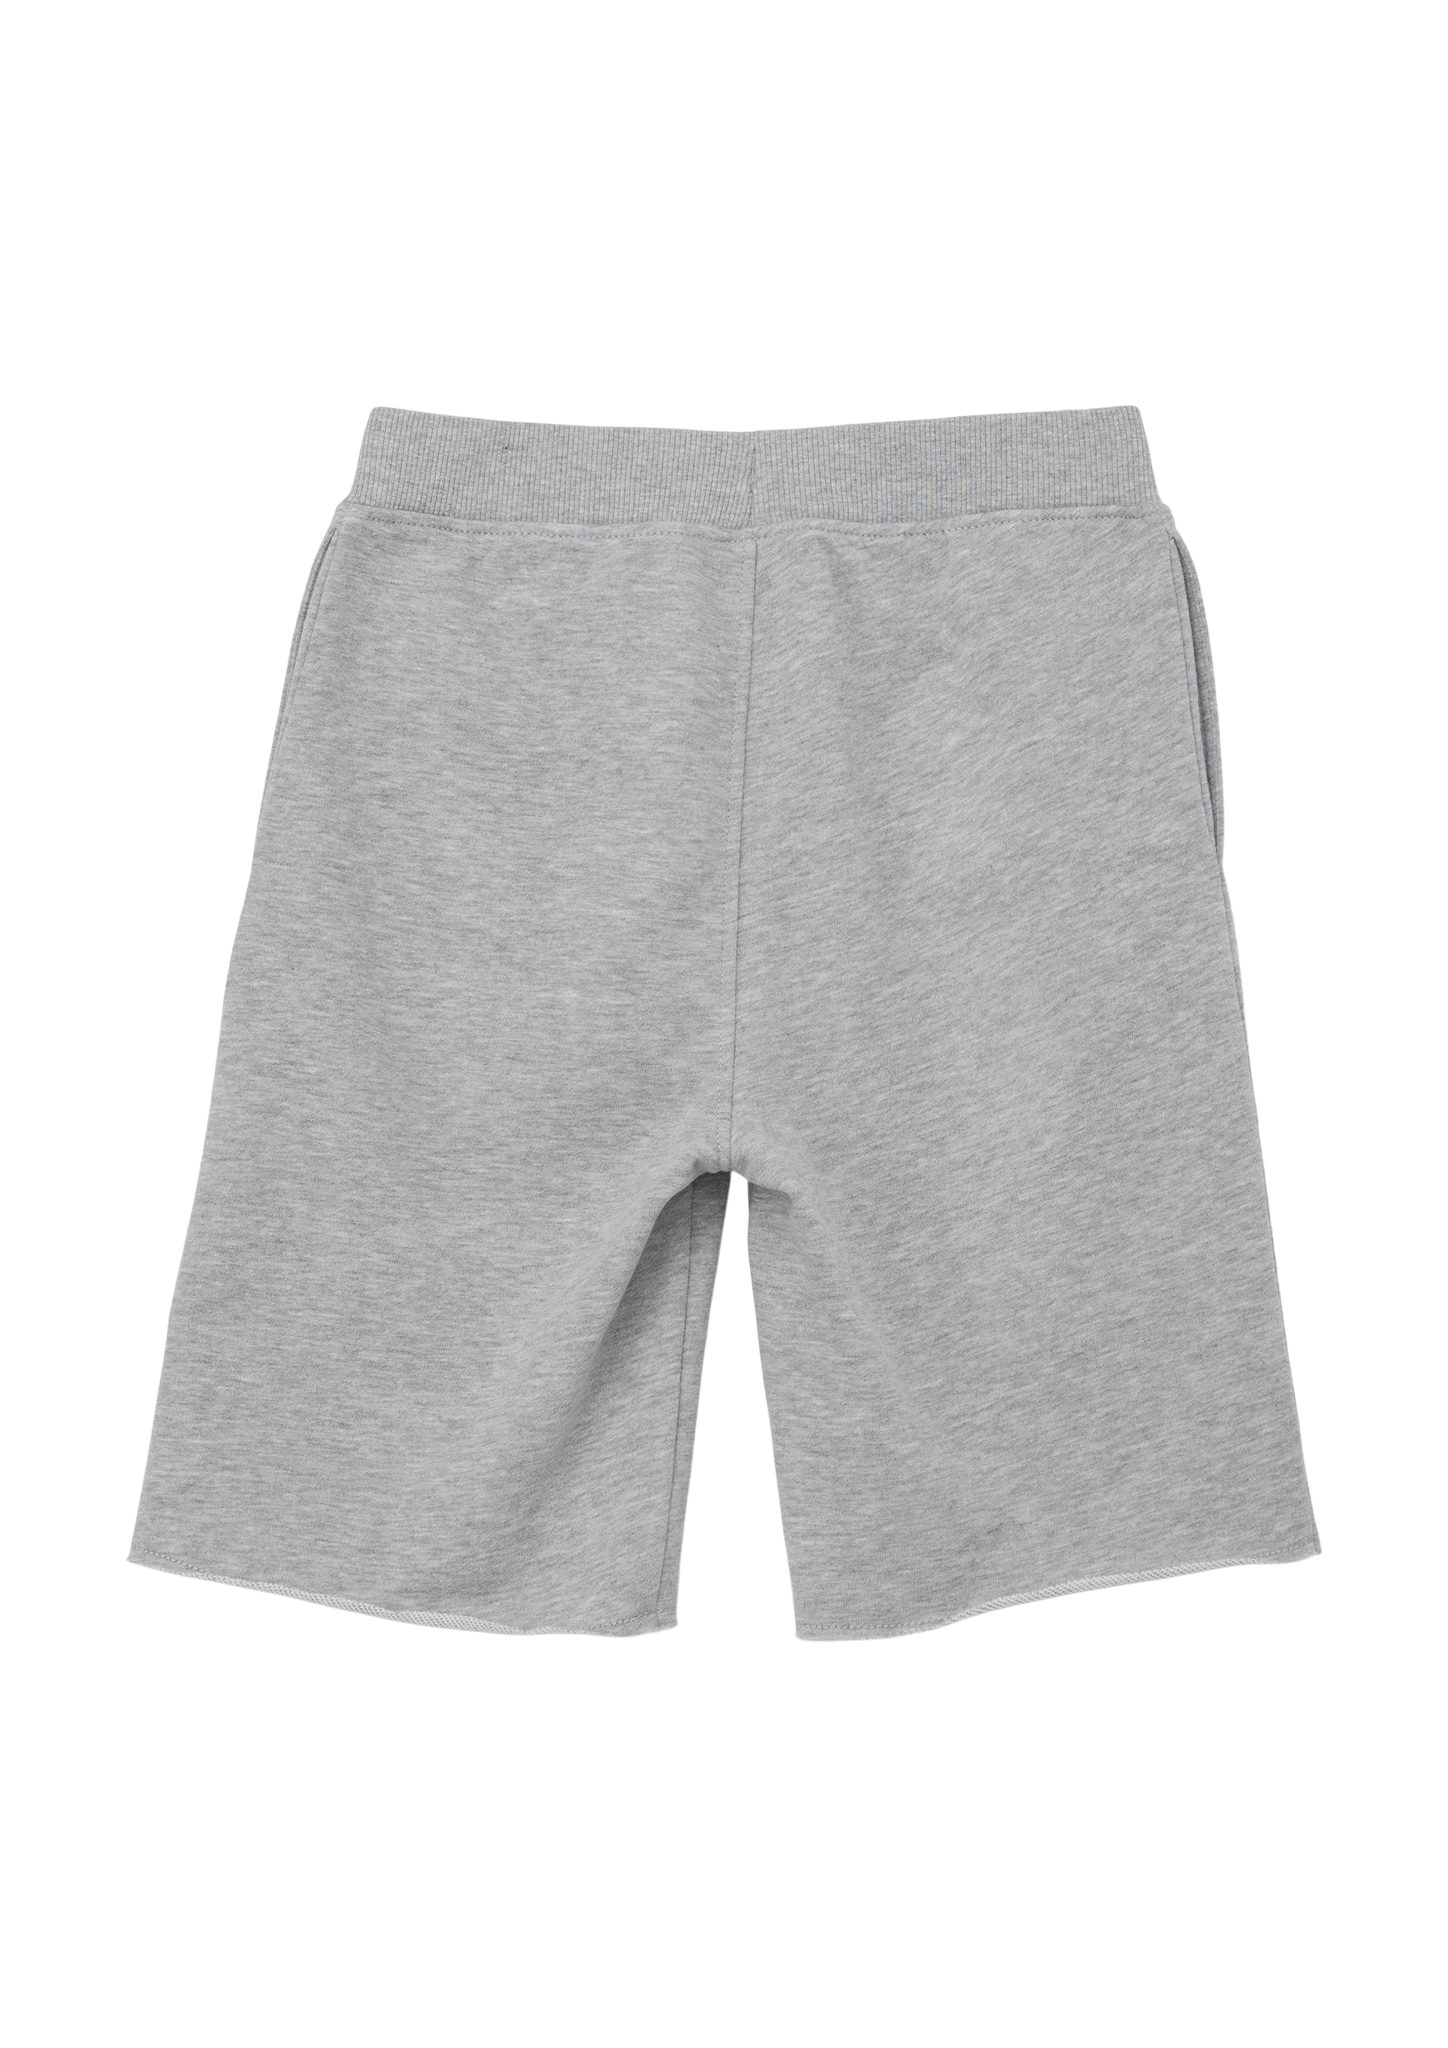 s.Oliver Leggings Regular: Sweat-Shorts mit Elastikbund Tunnelzug grau meliert angedeuteter Rippblende